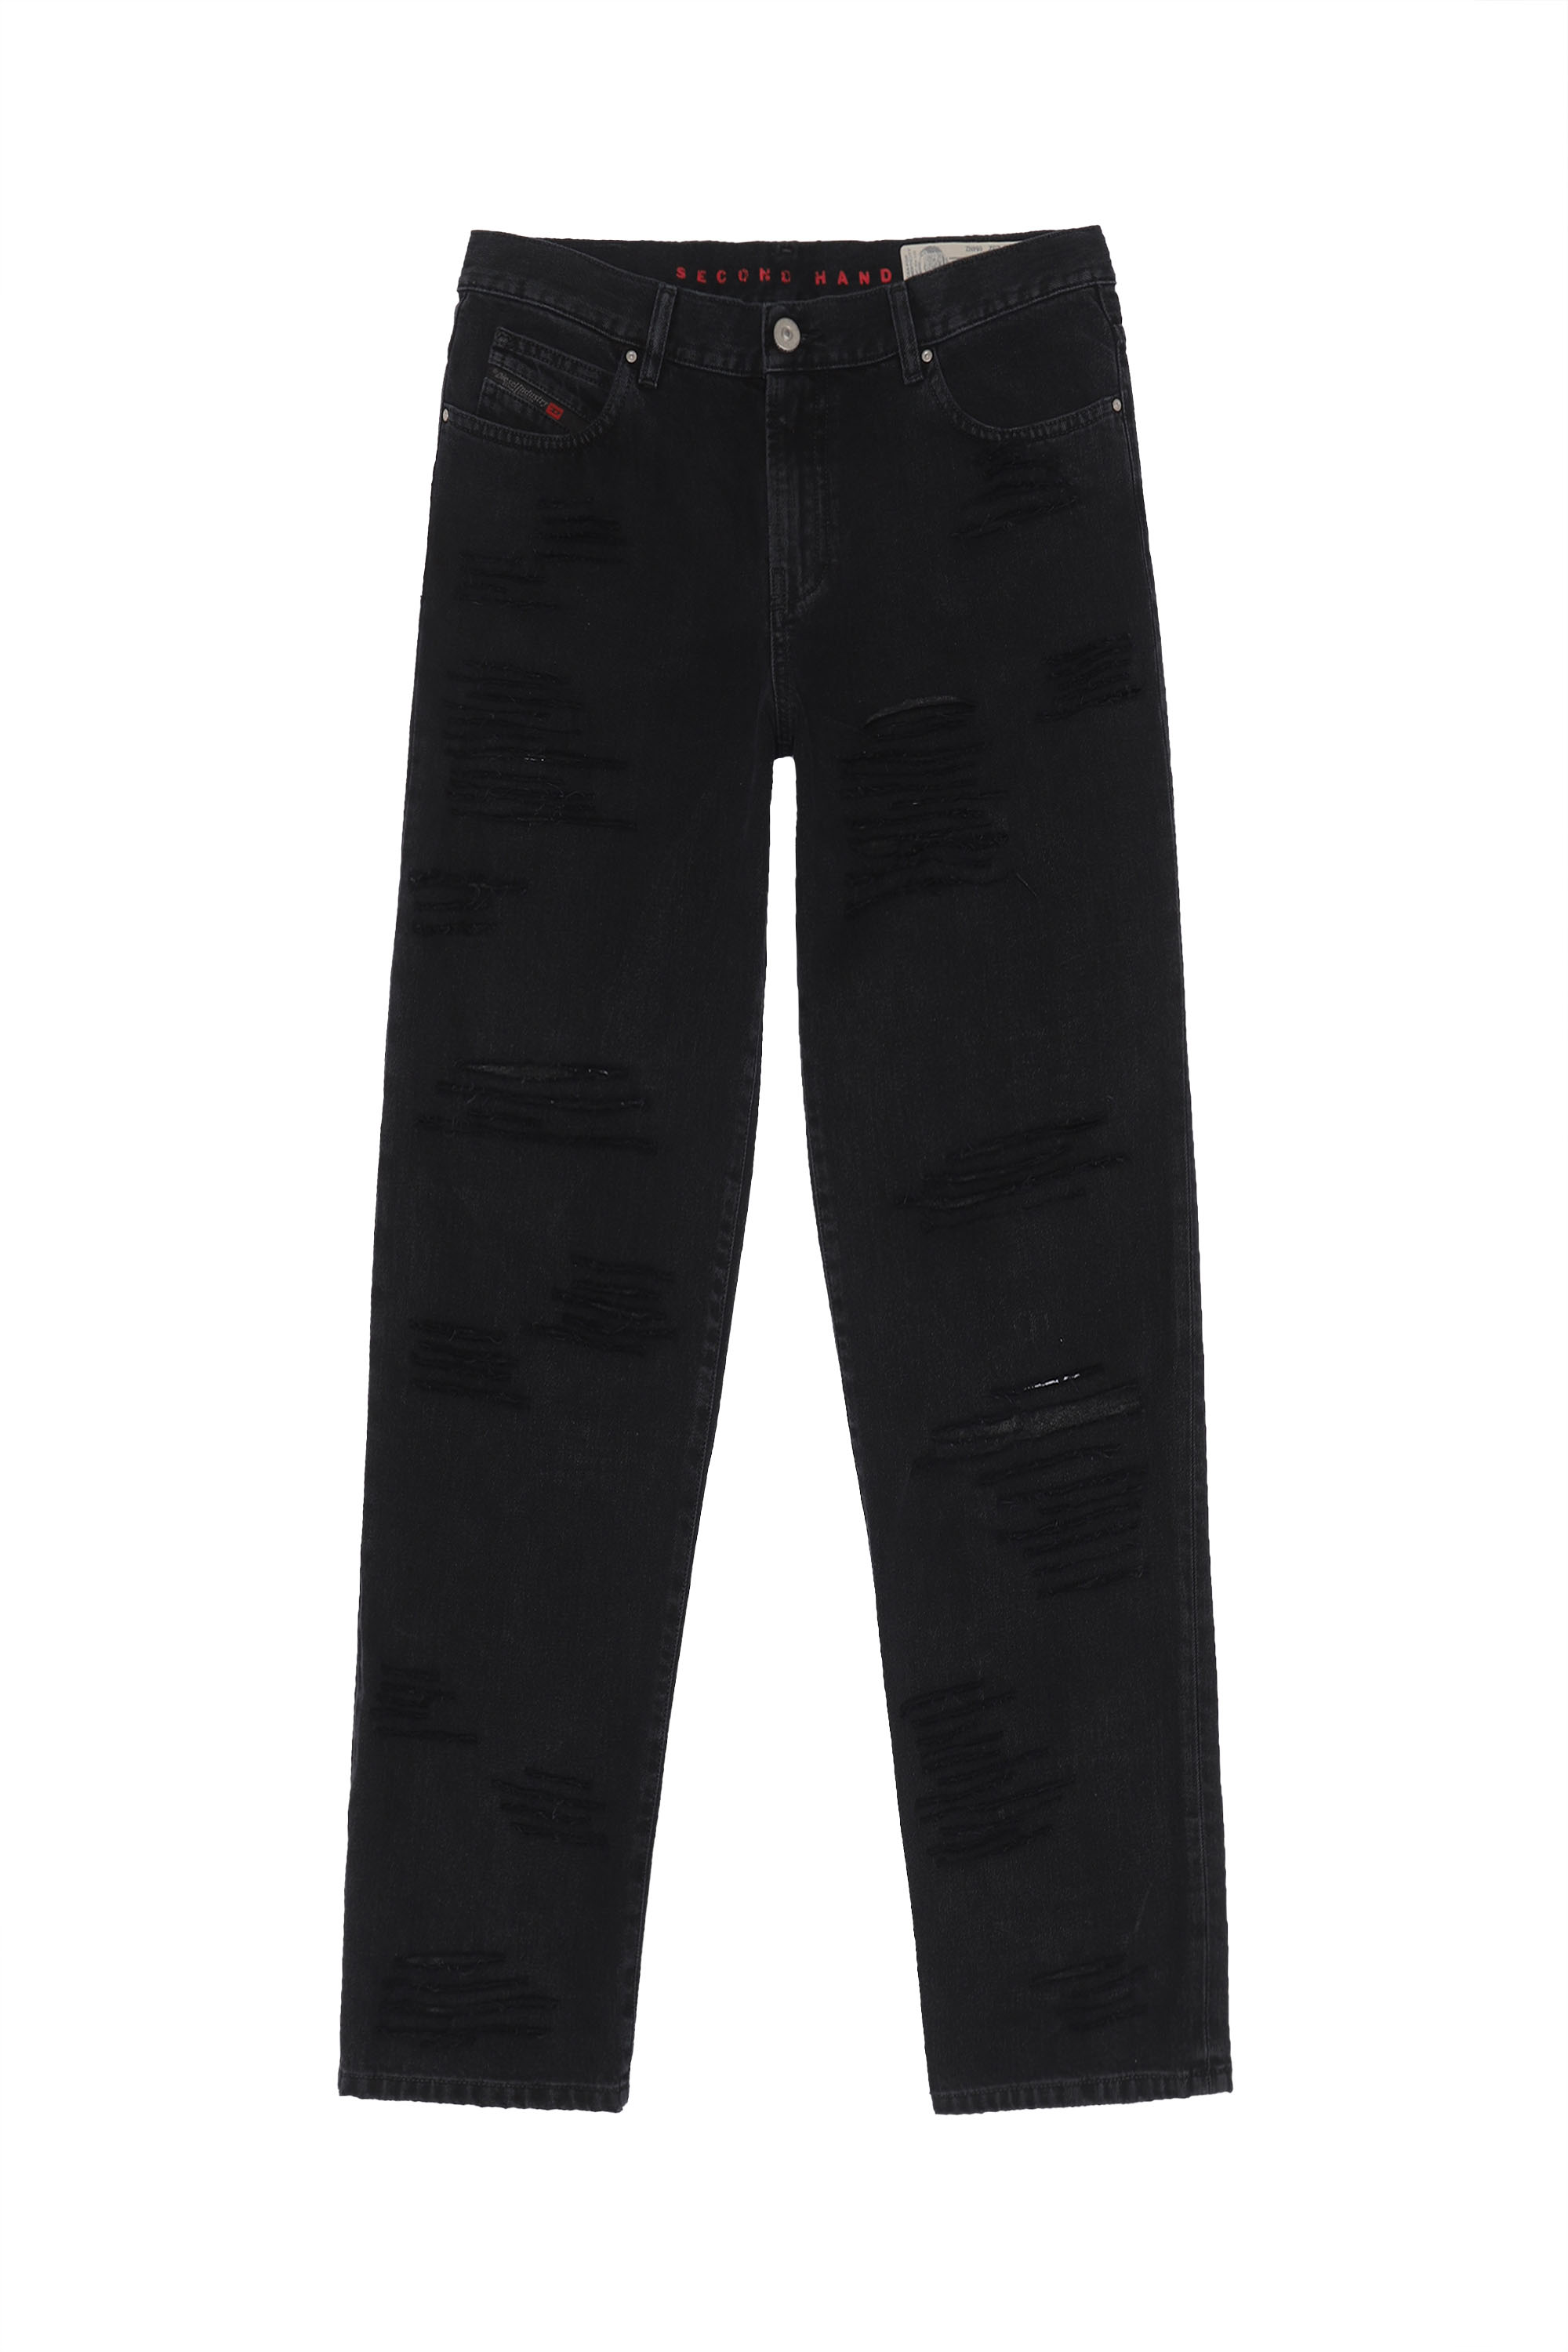 NICLAH, Black/Dark grey - Jeans